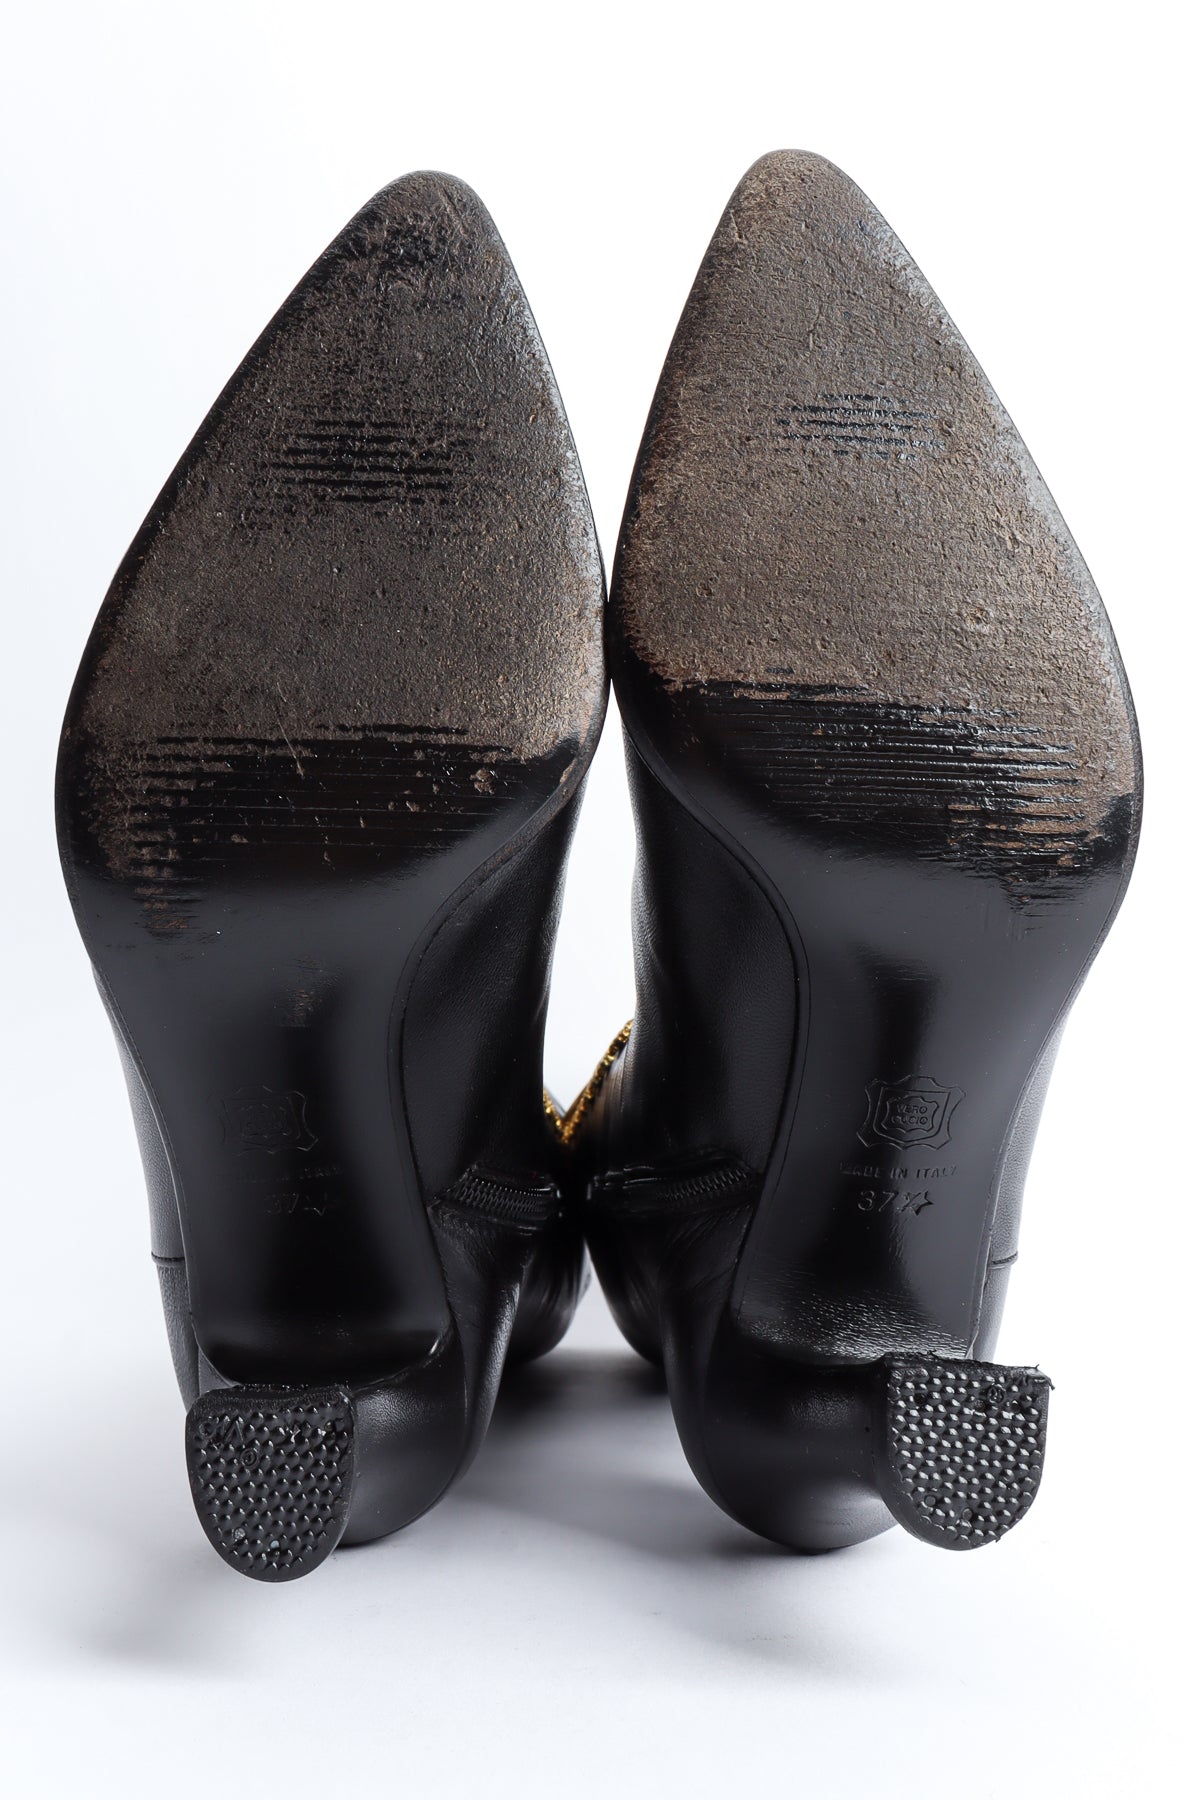 Vintage Gianni Versace 1993 A/W Medusa Emblem Grunge Boot worn soles @ Recess LA